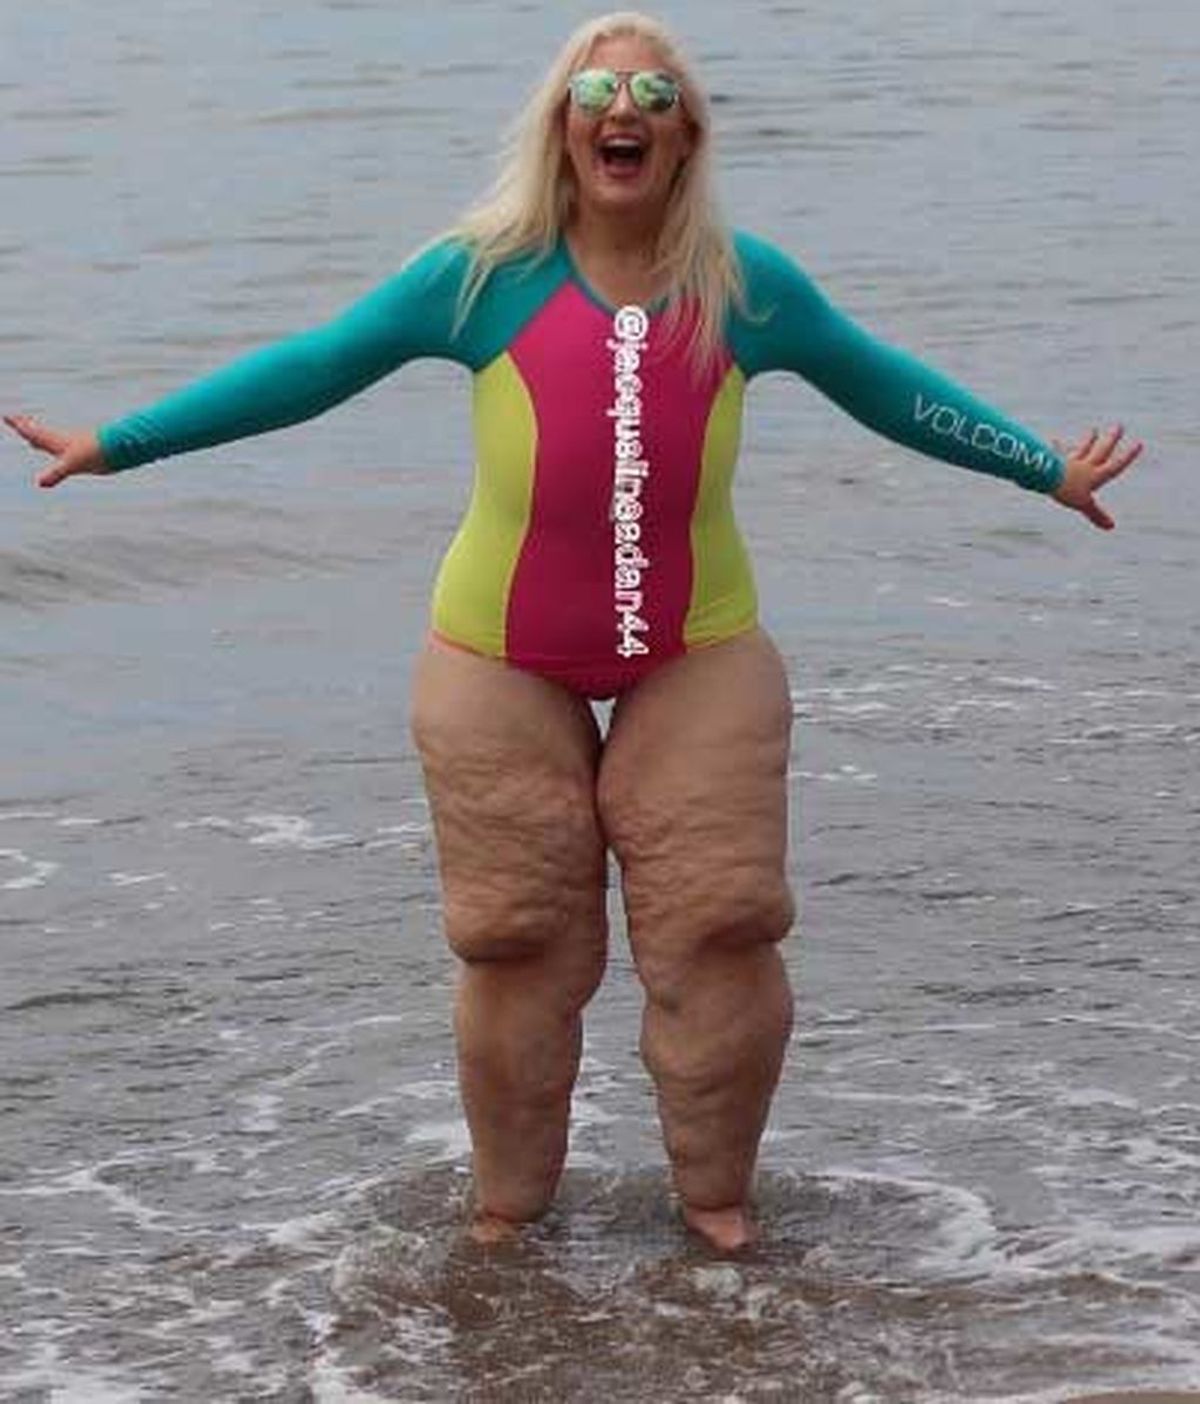 Desata las burlas de la gente cuando se queda en bañador tras perder 158 kilos de peso